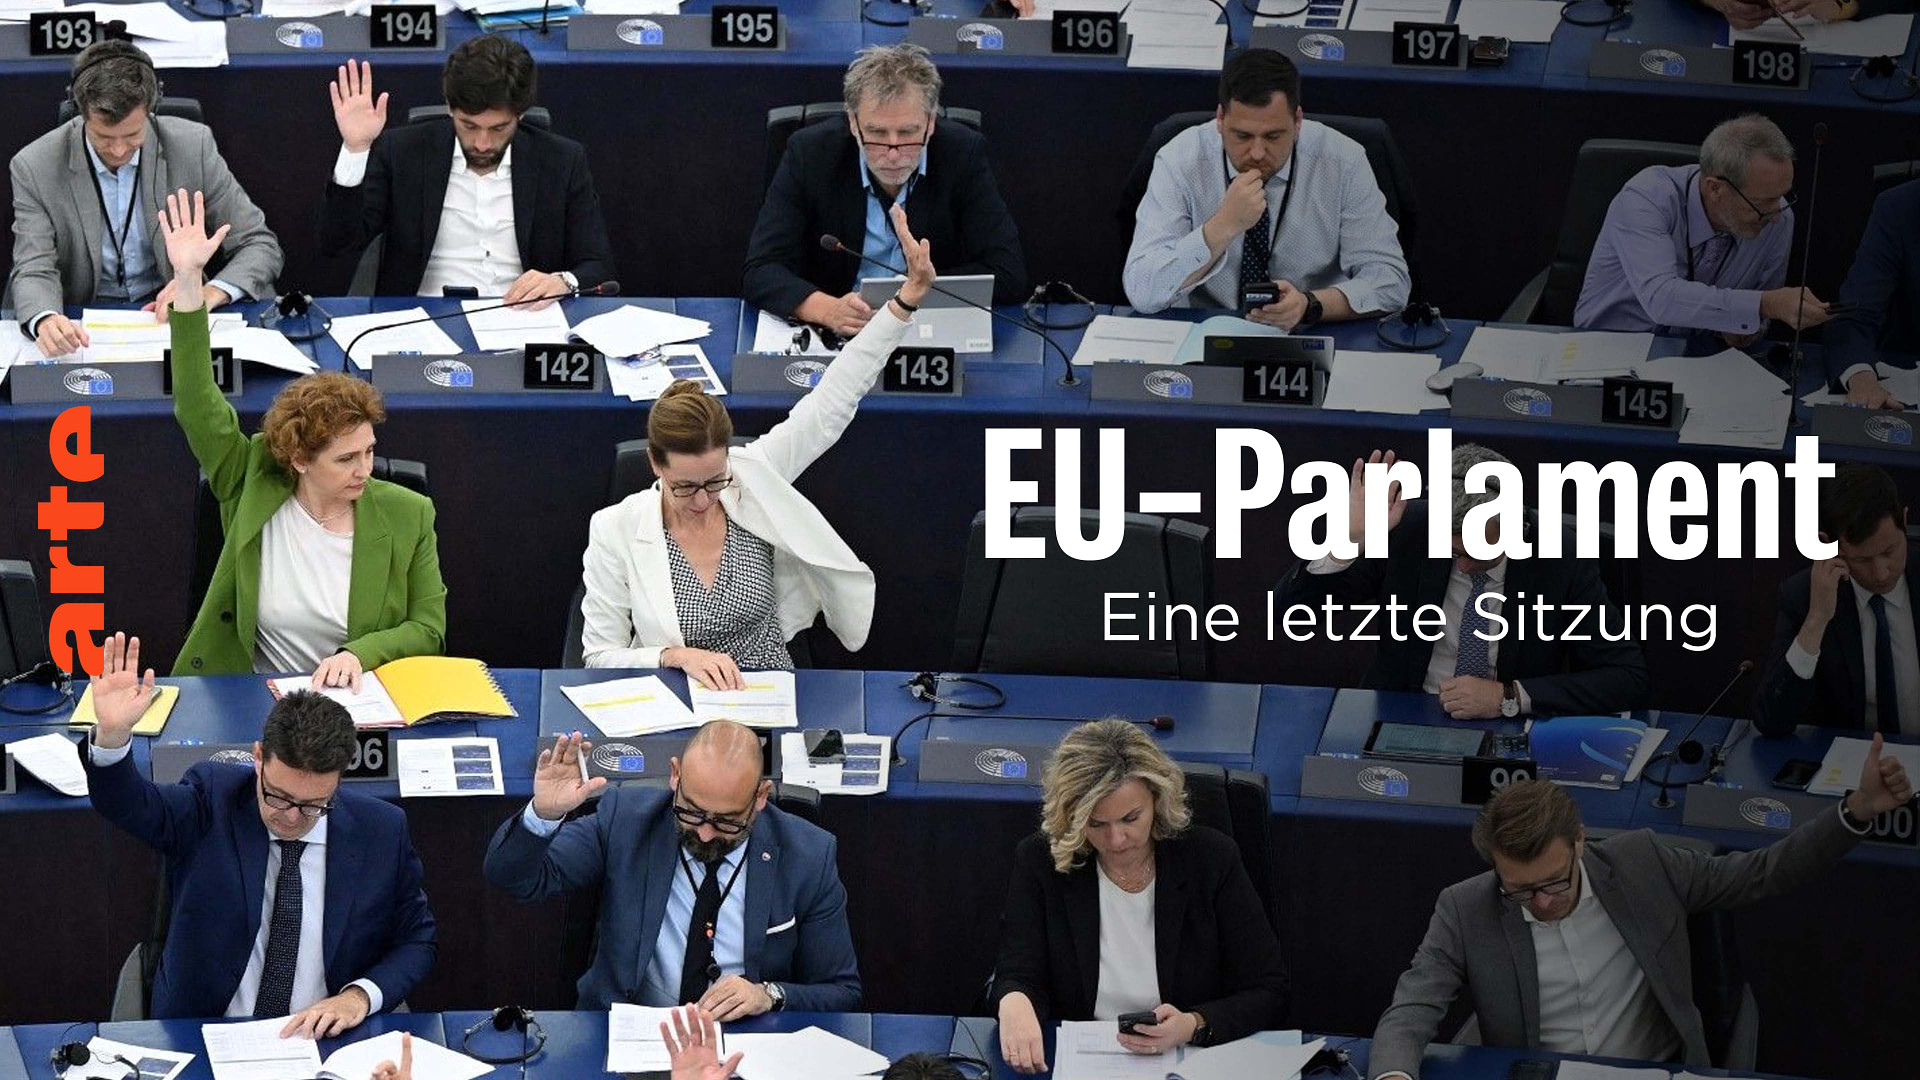 Die letzte Sitzung des EU-Parlaments